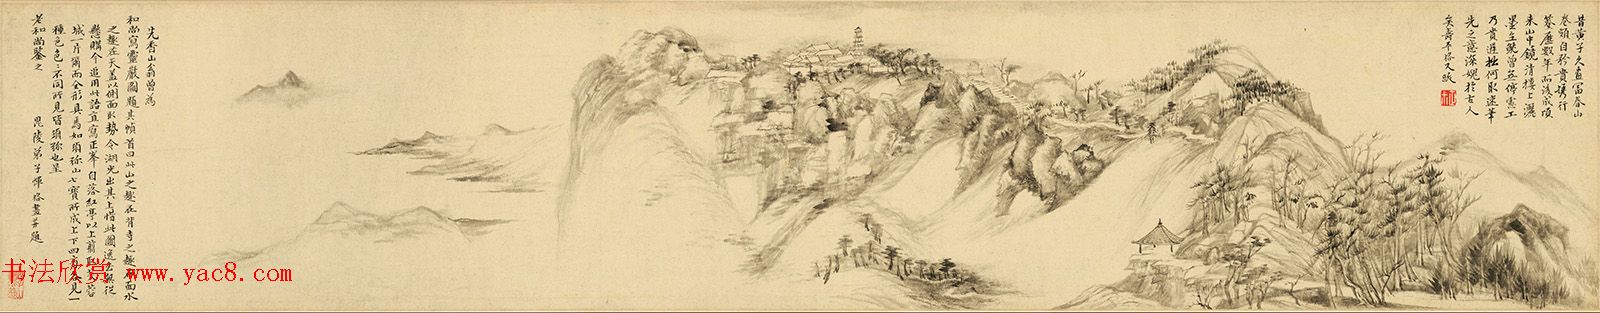 恽寿平31岁字画《灵岩山图》卷